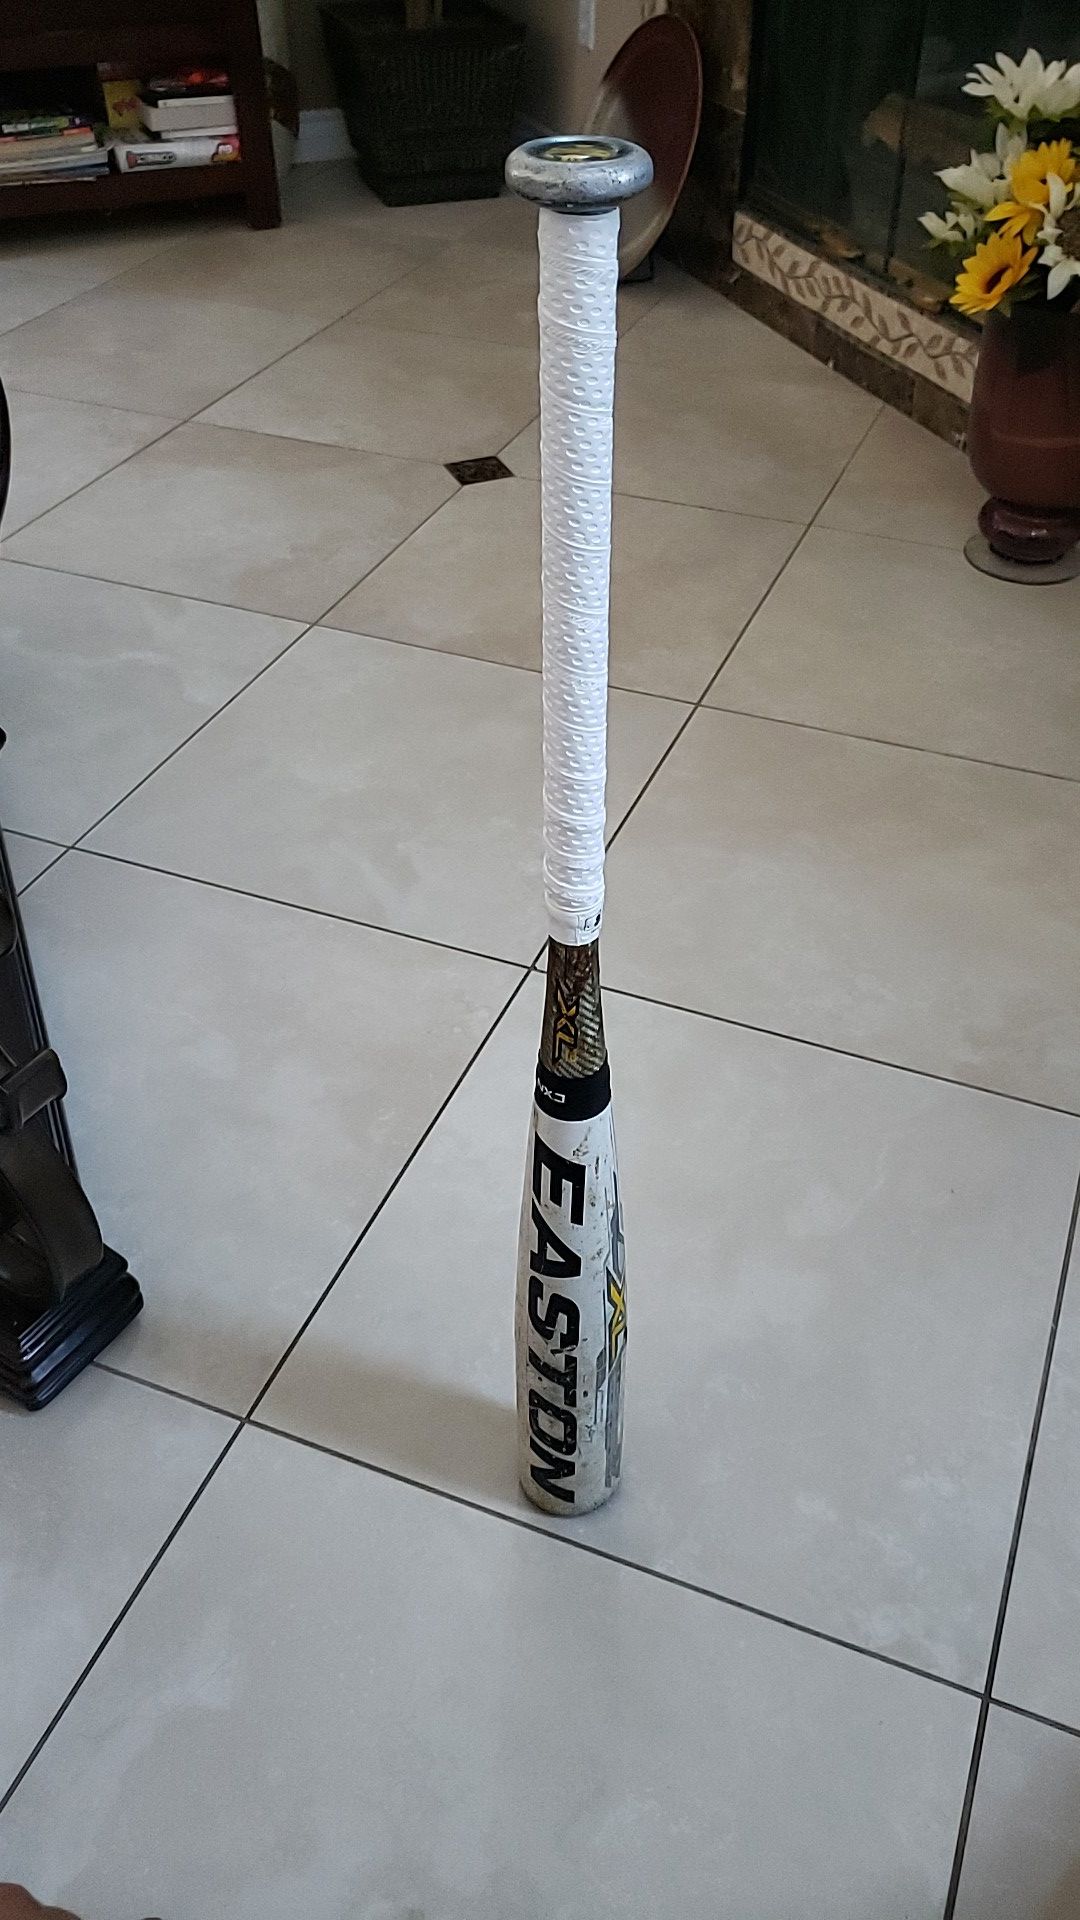 Easton bbcor 31 inch baseball bat